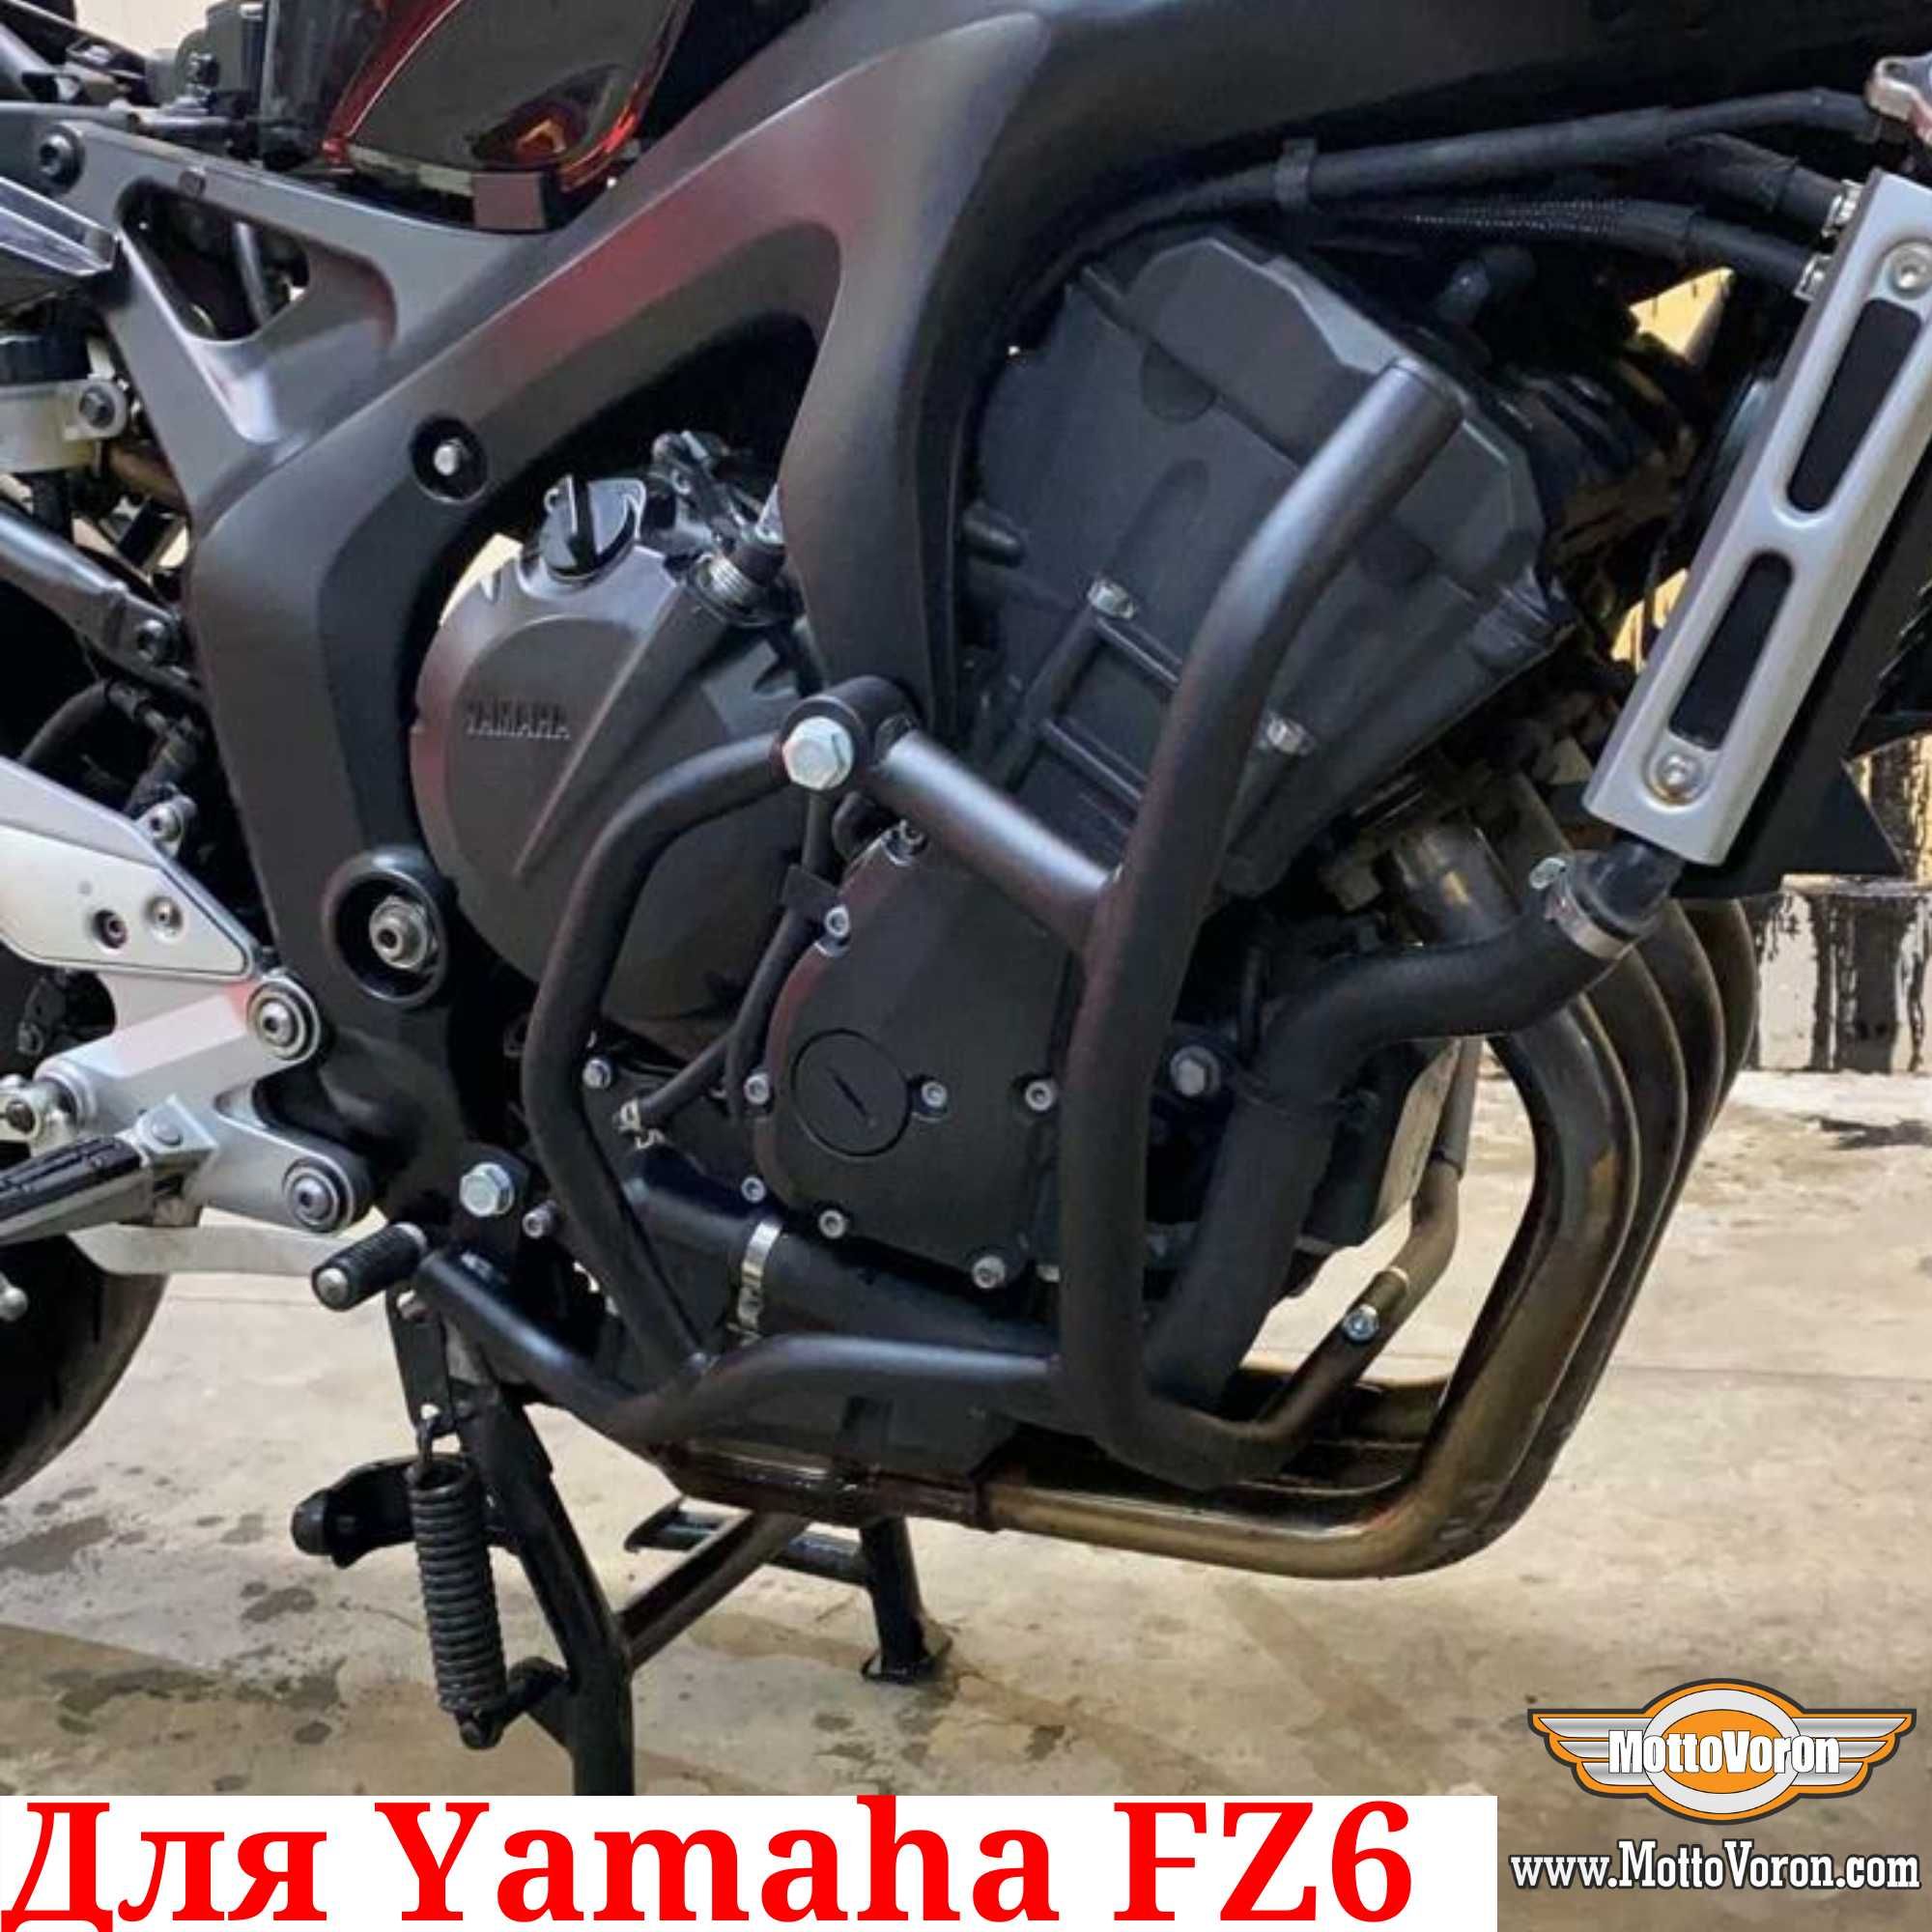 Защитные дуги Yamaha FZ6N FZ6S FZ6 S2 Fazer клетка защита обвес FZ6